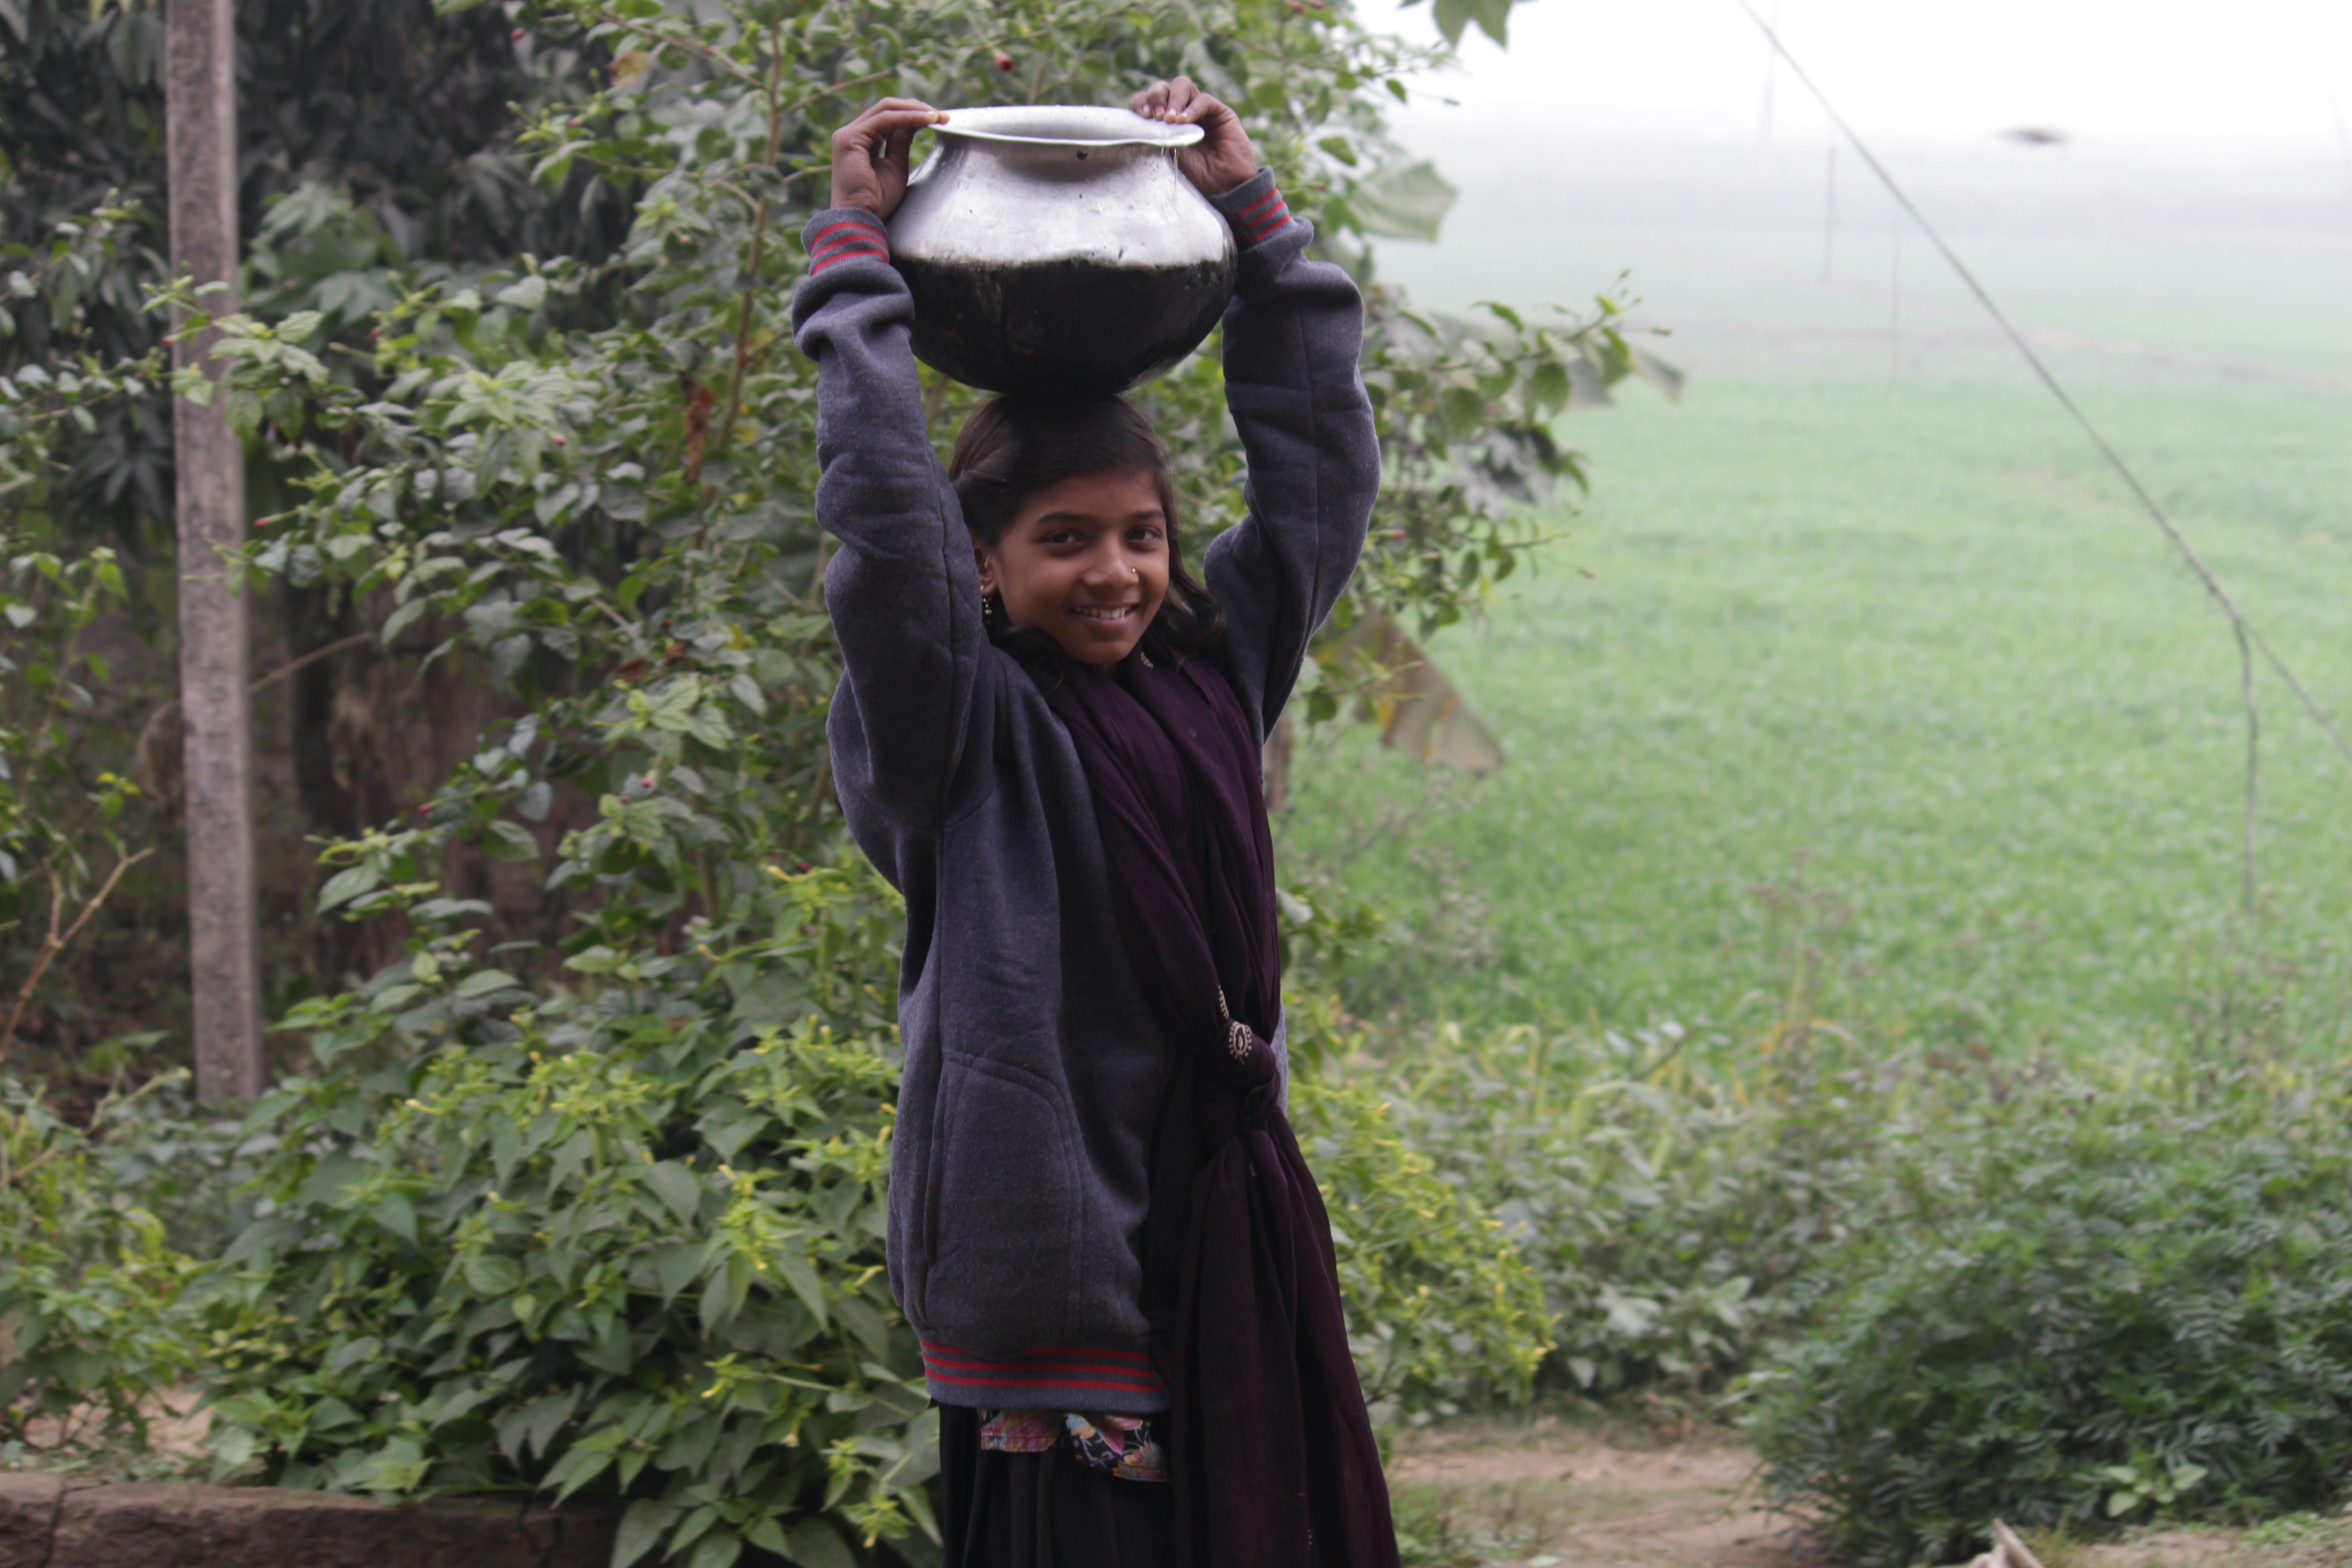 Free stock photo of Indian village girl, Rural Girl, Village morning